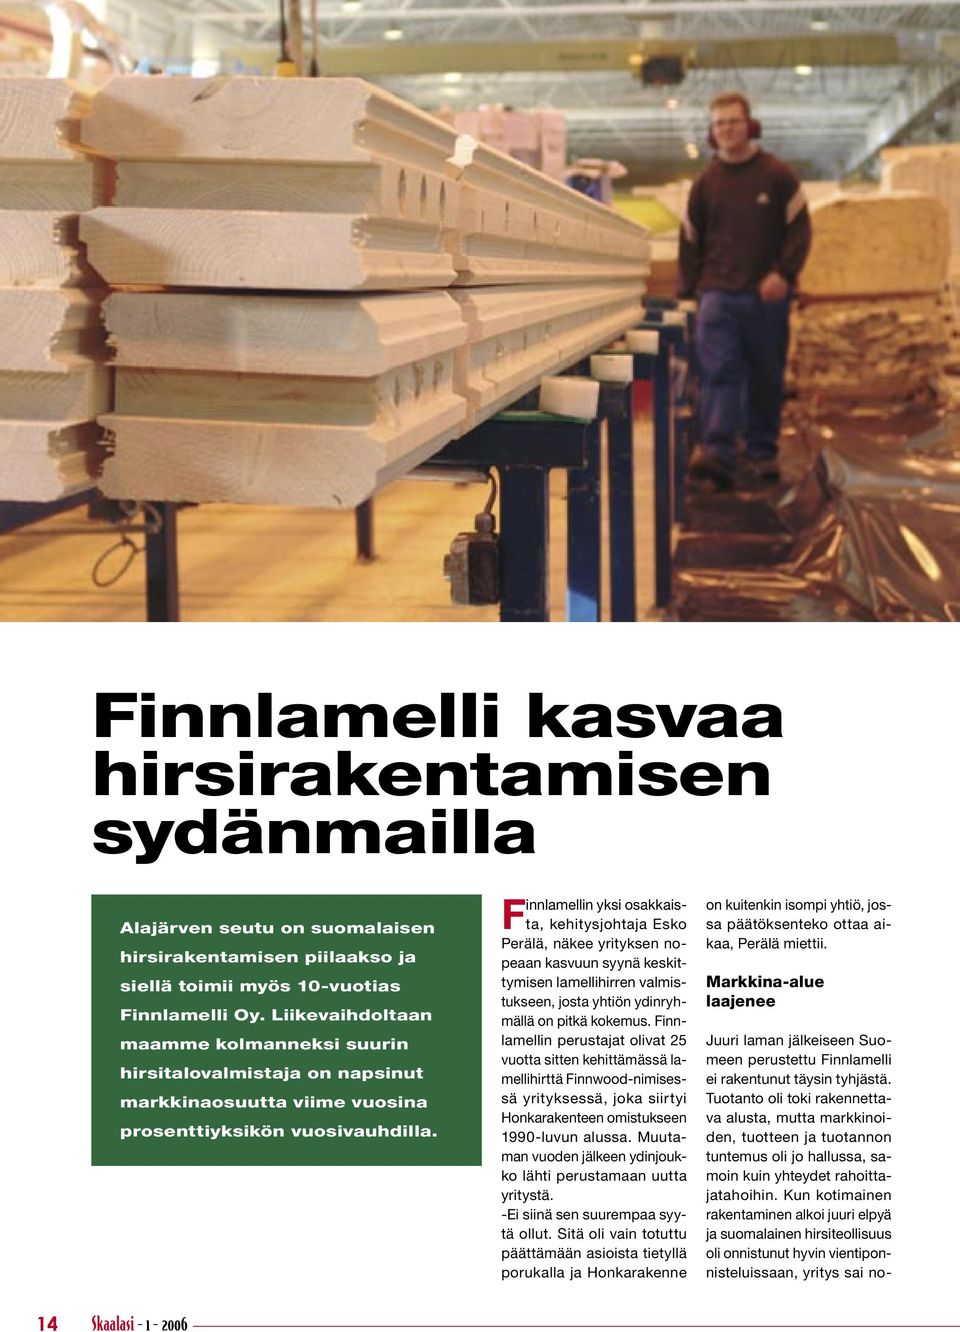 Finnlamellin yksi osakkaista, kehitysjohtaja Esko Perälä, näkee yrityksen nopeaan kasvuun syynä keskittymisen lamellihirren valmistukseen, josta yhtiön ydinryhmällä on pitkä kokemus.